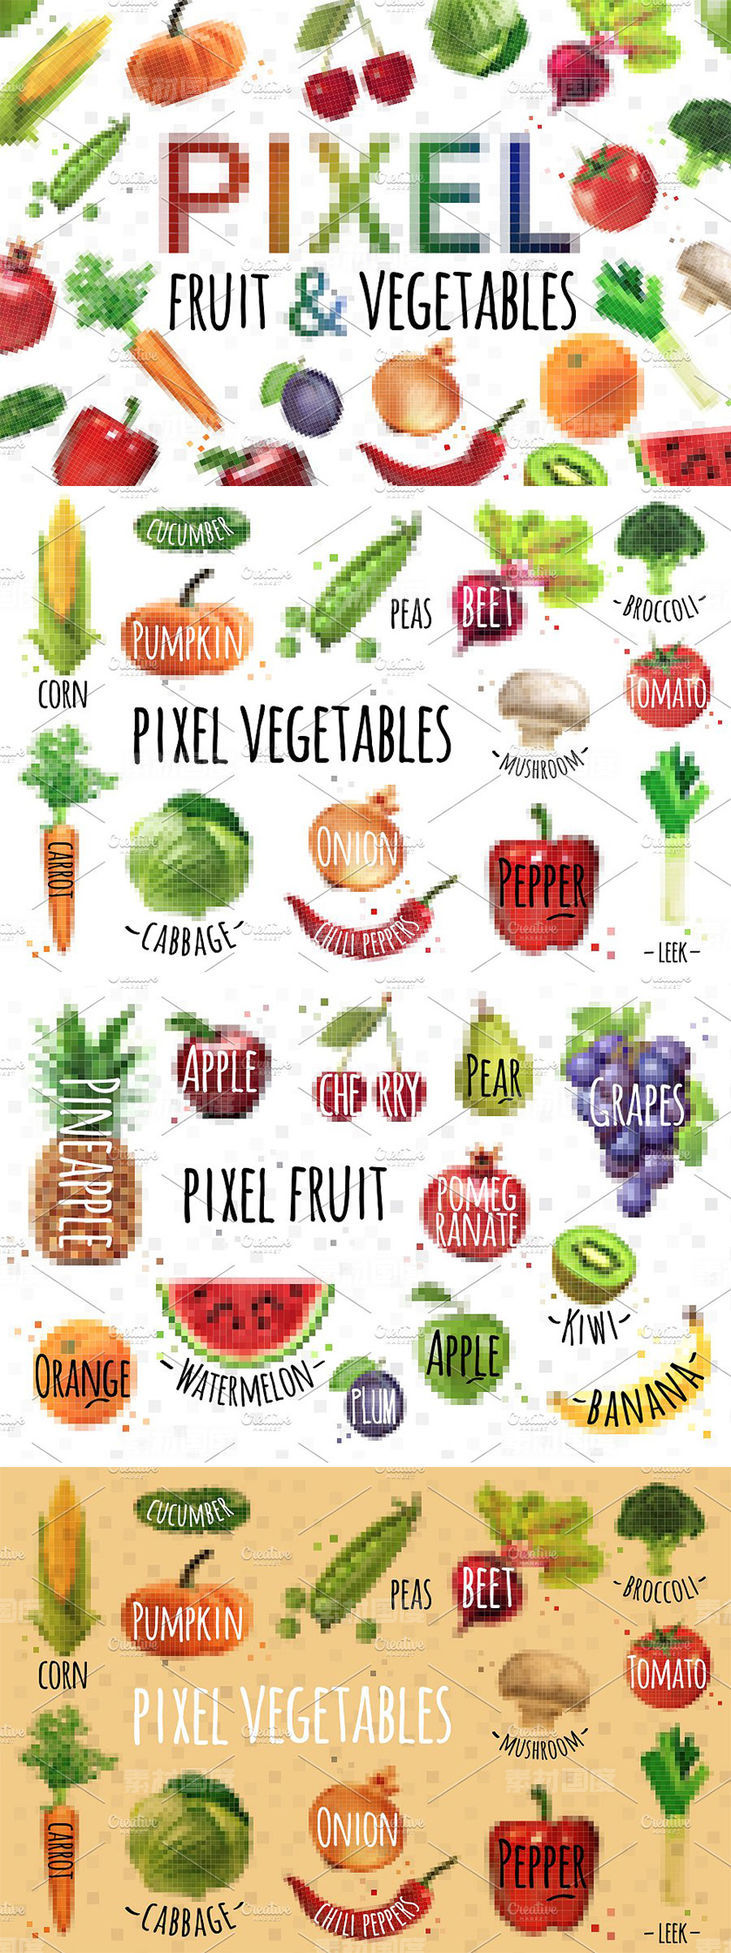 几何方块蔬菜水果颗粒像素化插图 Pixel Fruit  Vegetables